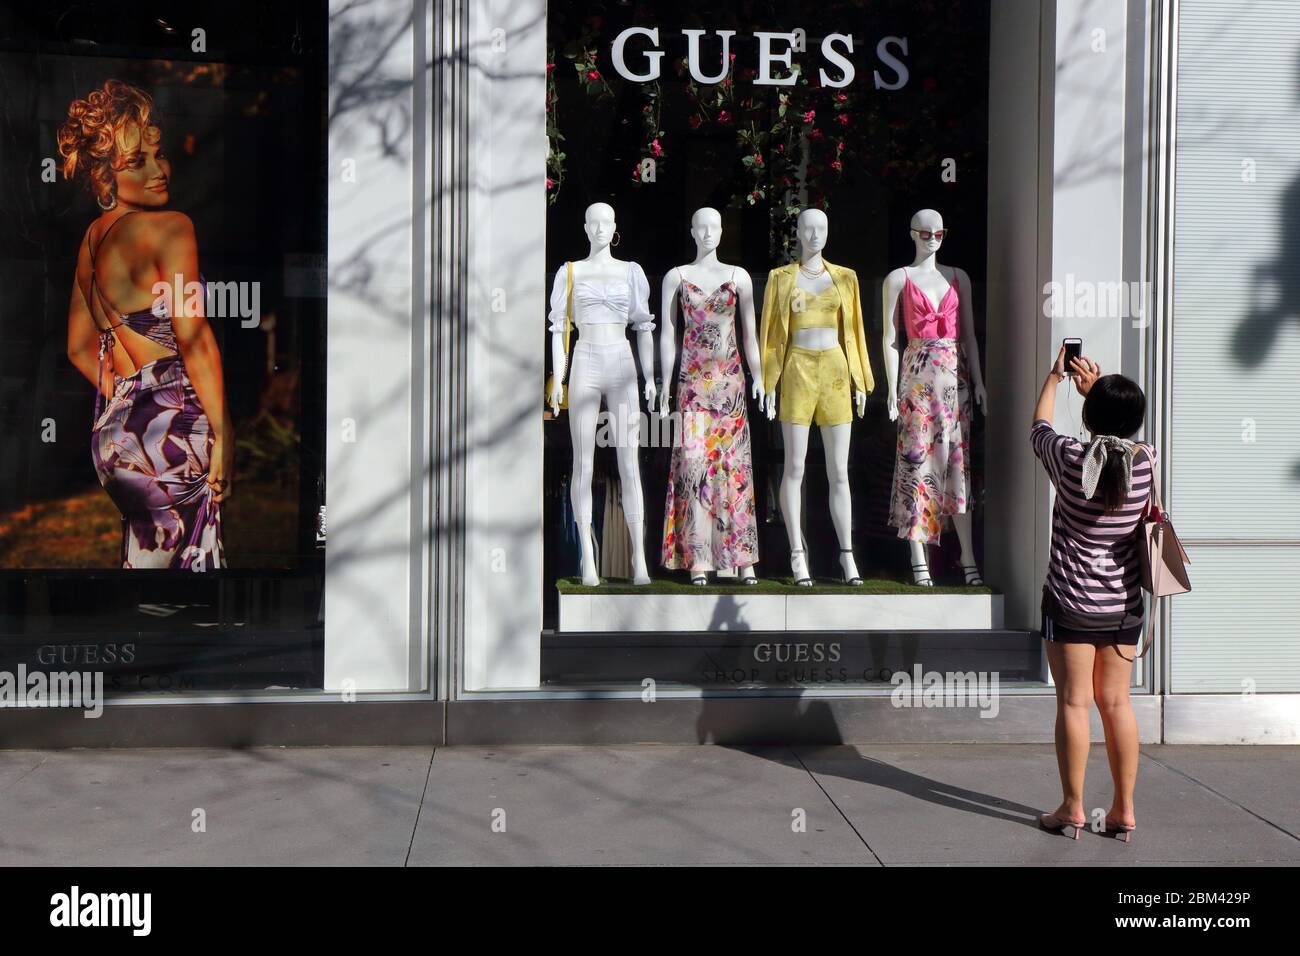 Une personne prend une photo de la mode printanière pendant que la fenêtre de shopping à GUESS, 575 Fifth Ave, New York Banque D'Images